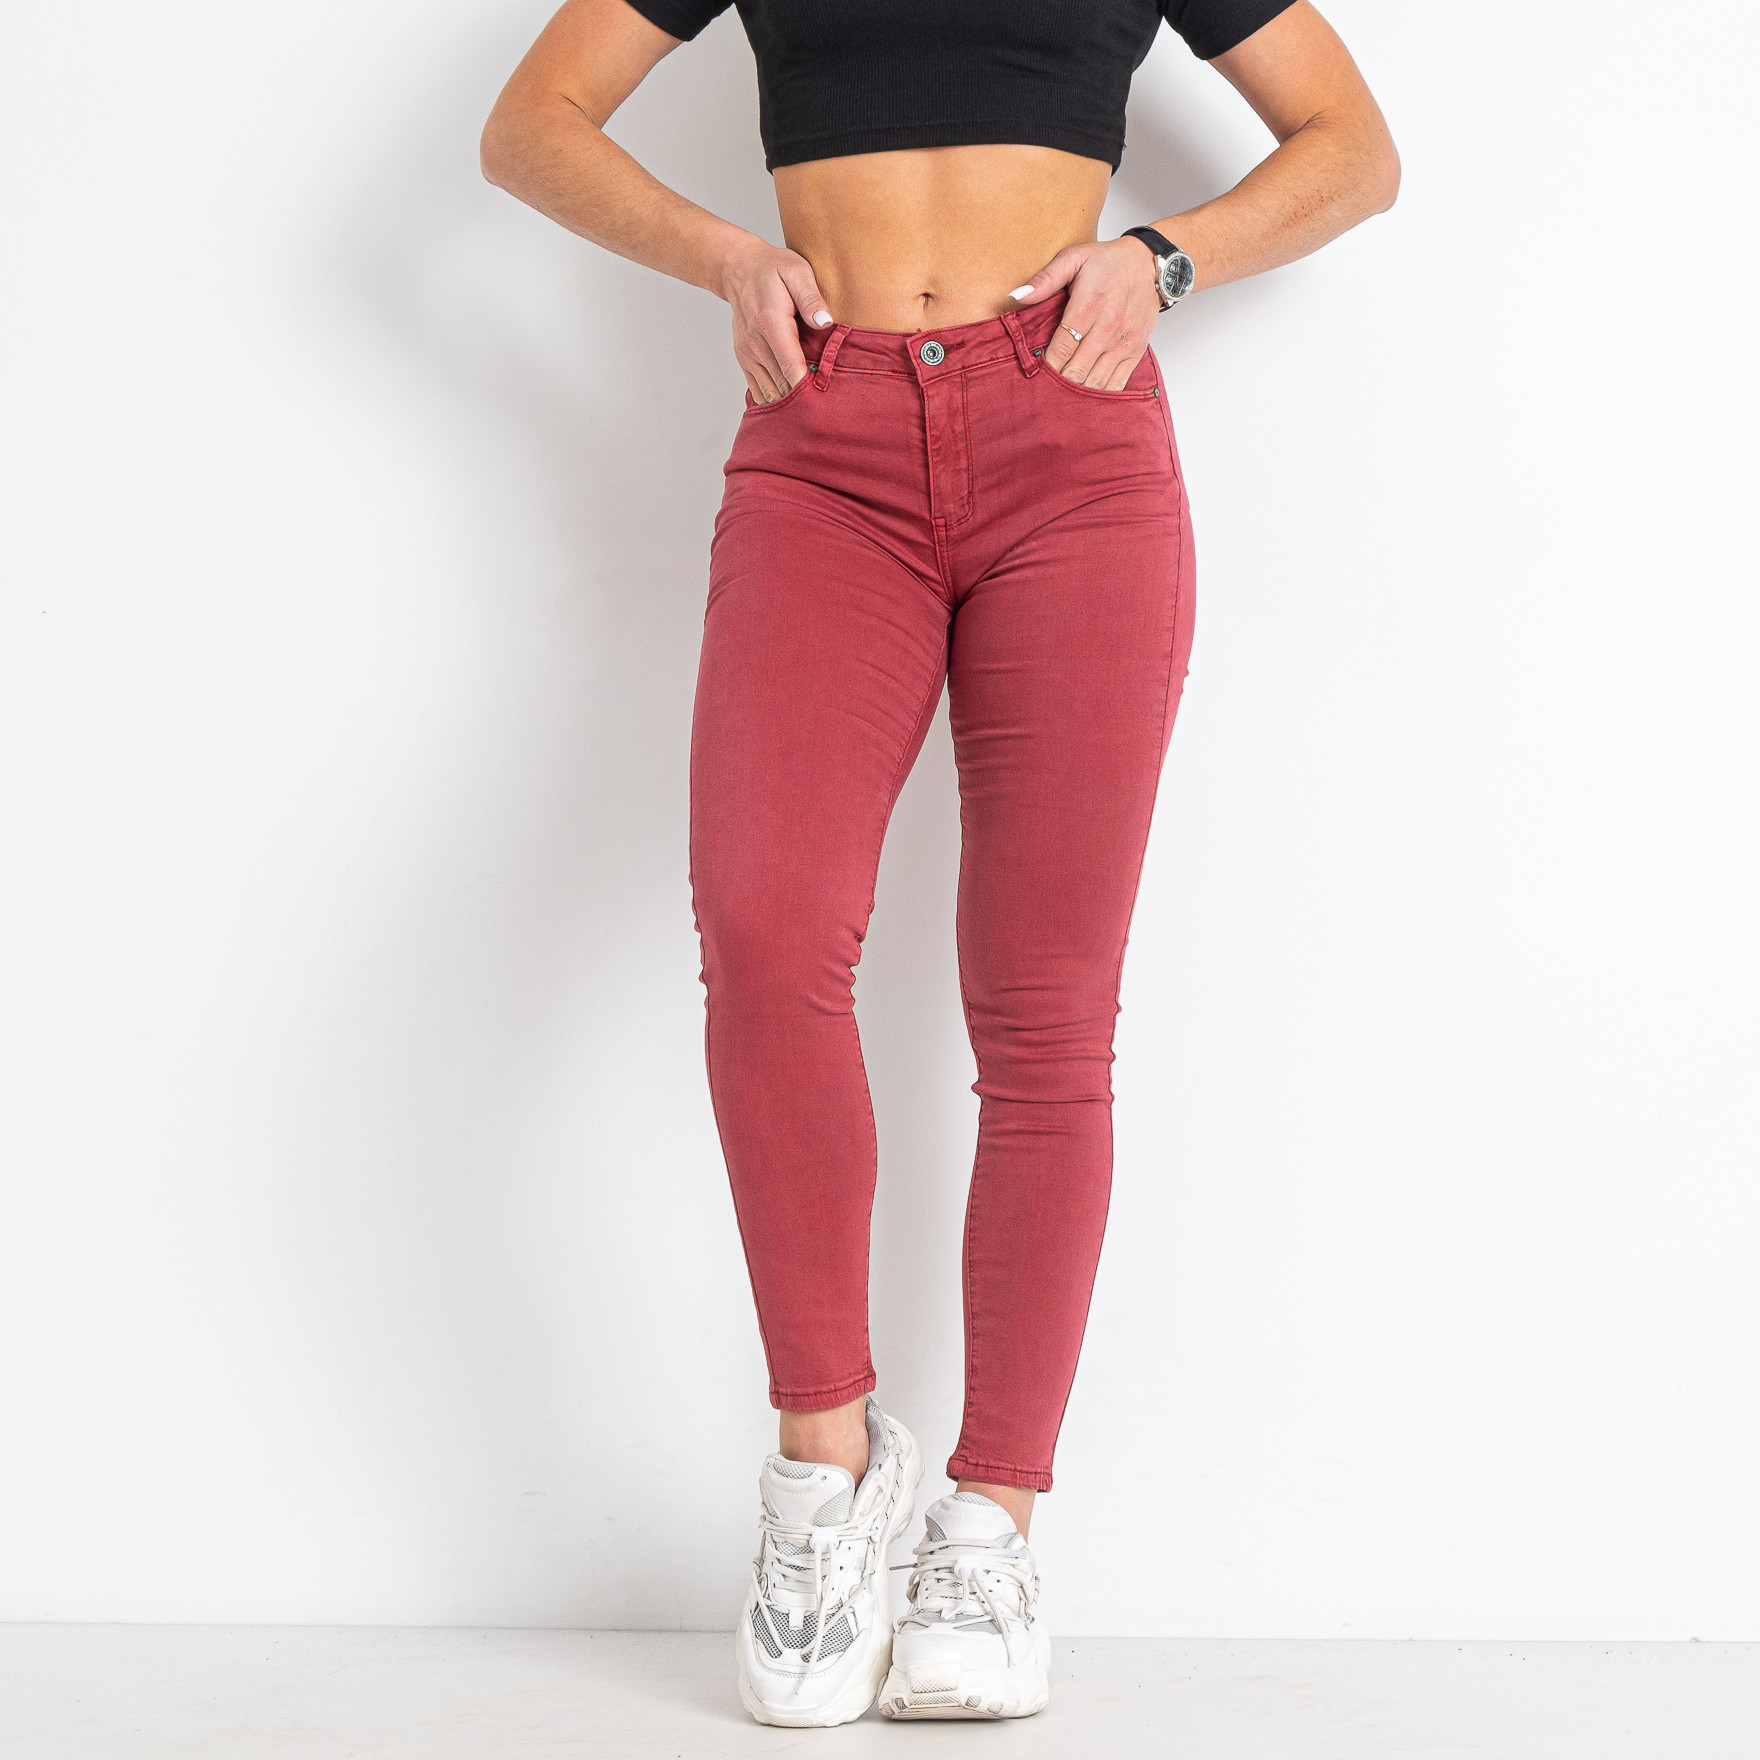 0002-3 красные женские джинсы (6 ед. размеры норма: 25. 26. 27. 28. 29. 30)